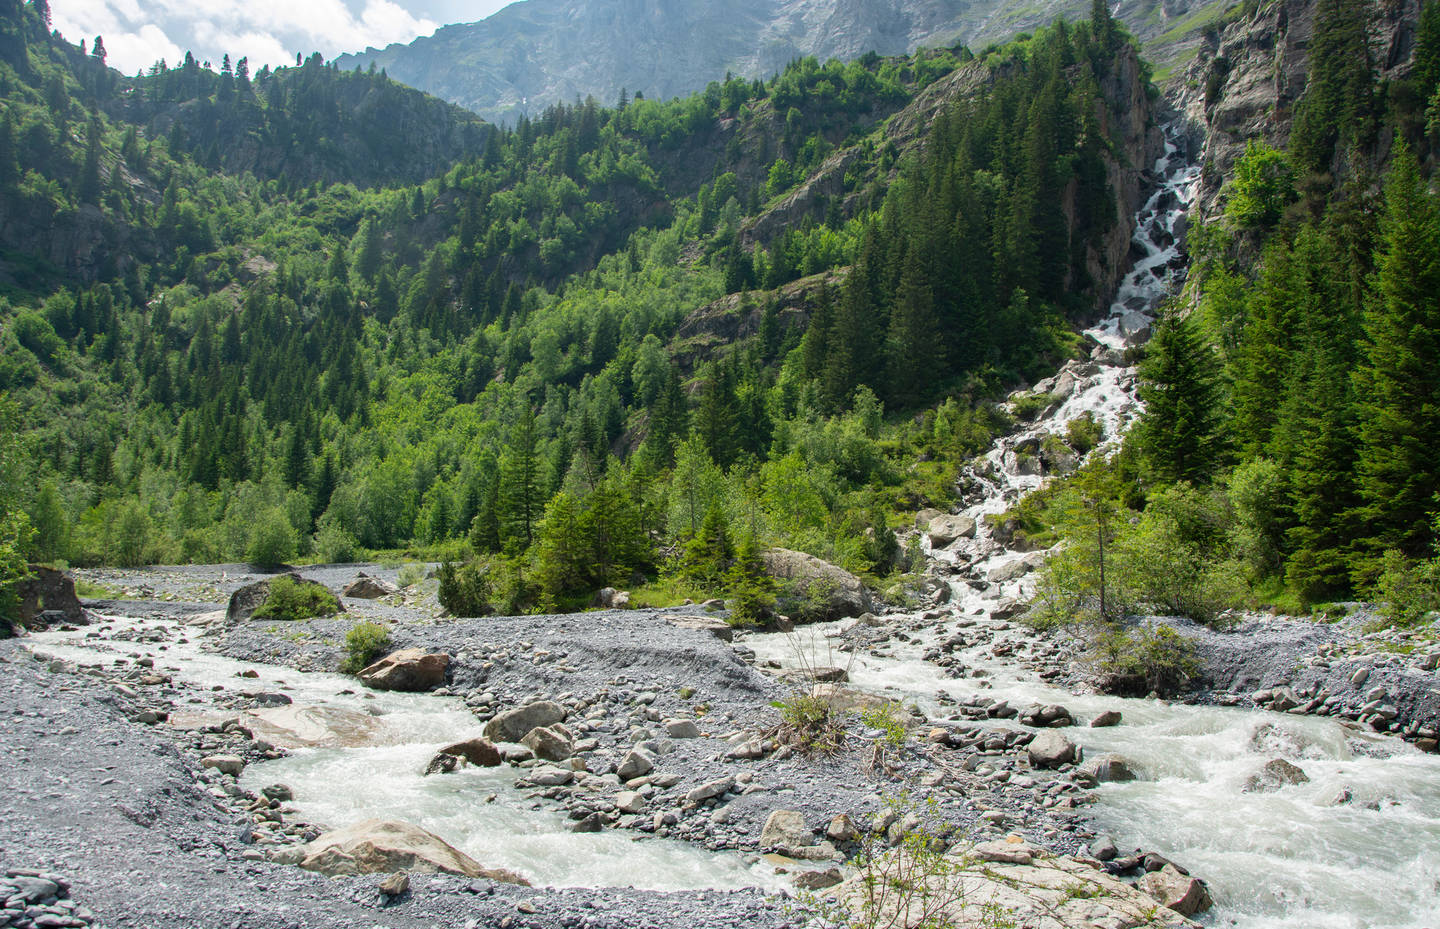 Paysages de montagne alpins dans la réserve naturelle Pro Natura de la vallée postérieure de Lauterbrunnen